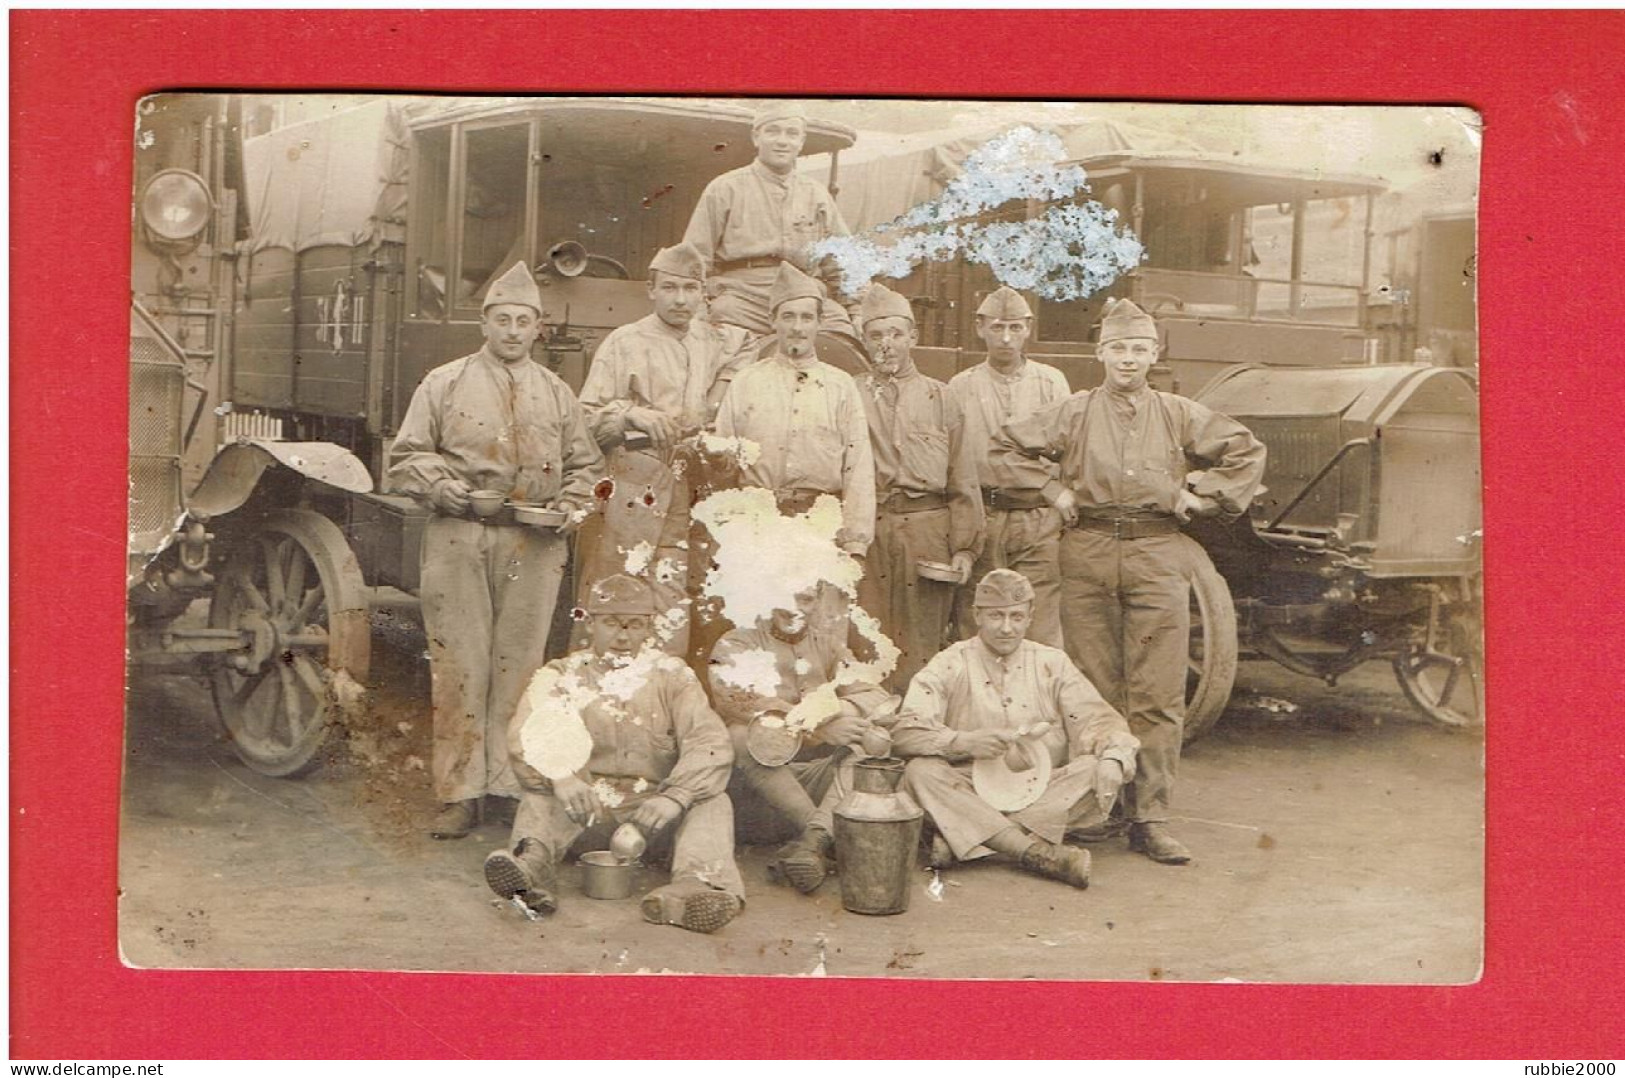 PHOTOGRAPHIE MILITAIRE SOLDAT DU 131° REGIMENT DEVANT VEHICULES MILITAIRES GUERRE 1914 1918 - Guerre, Militaire